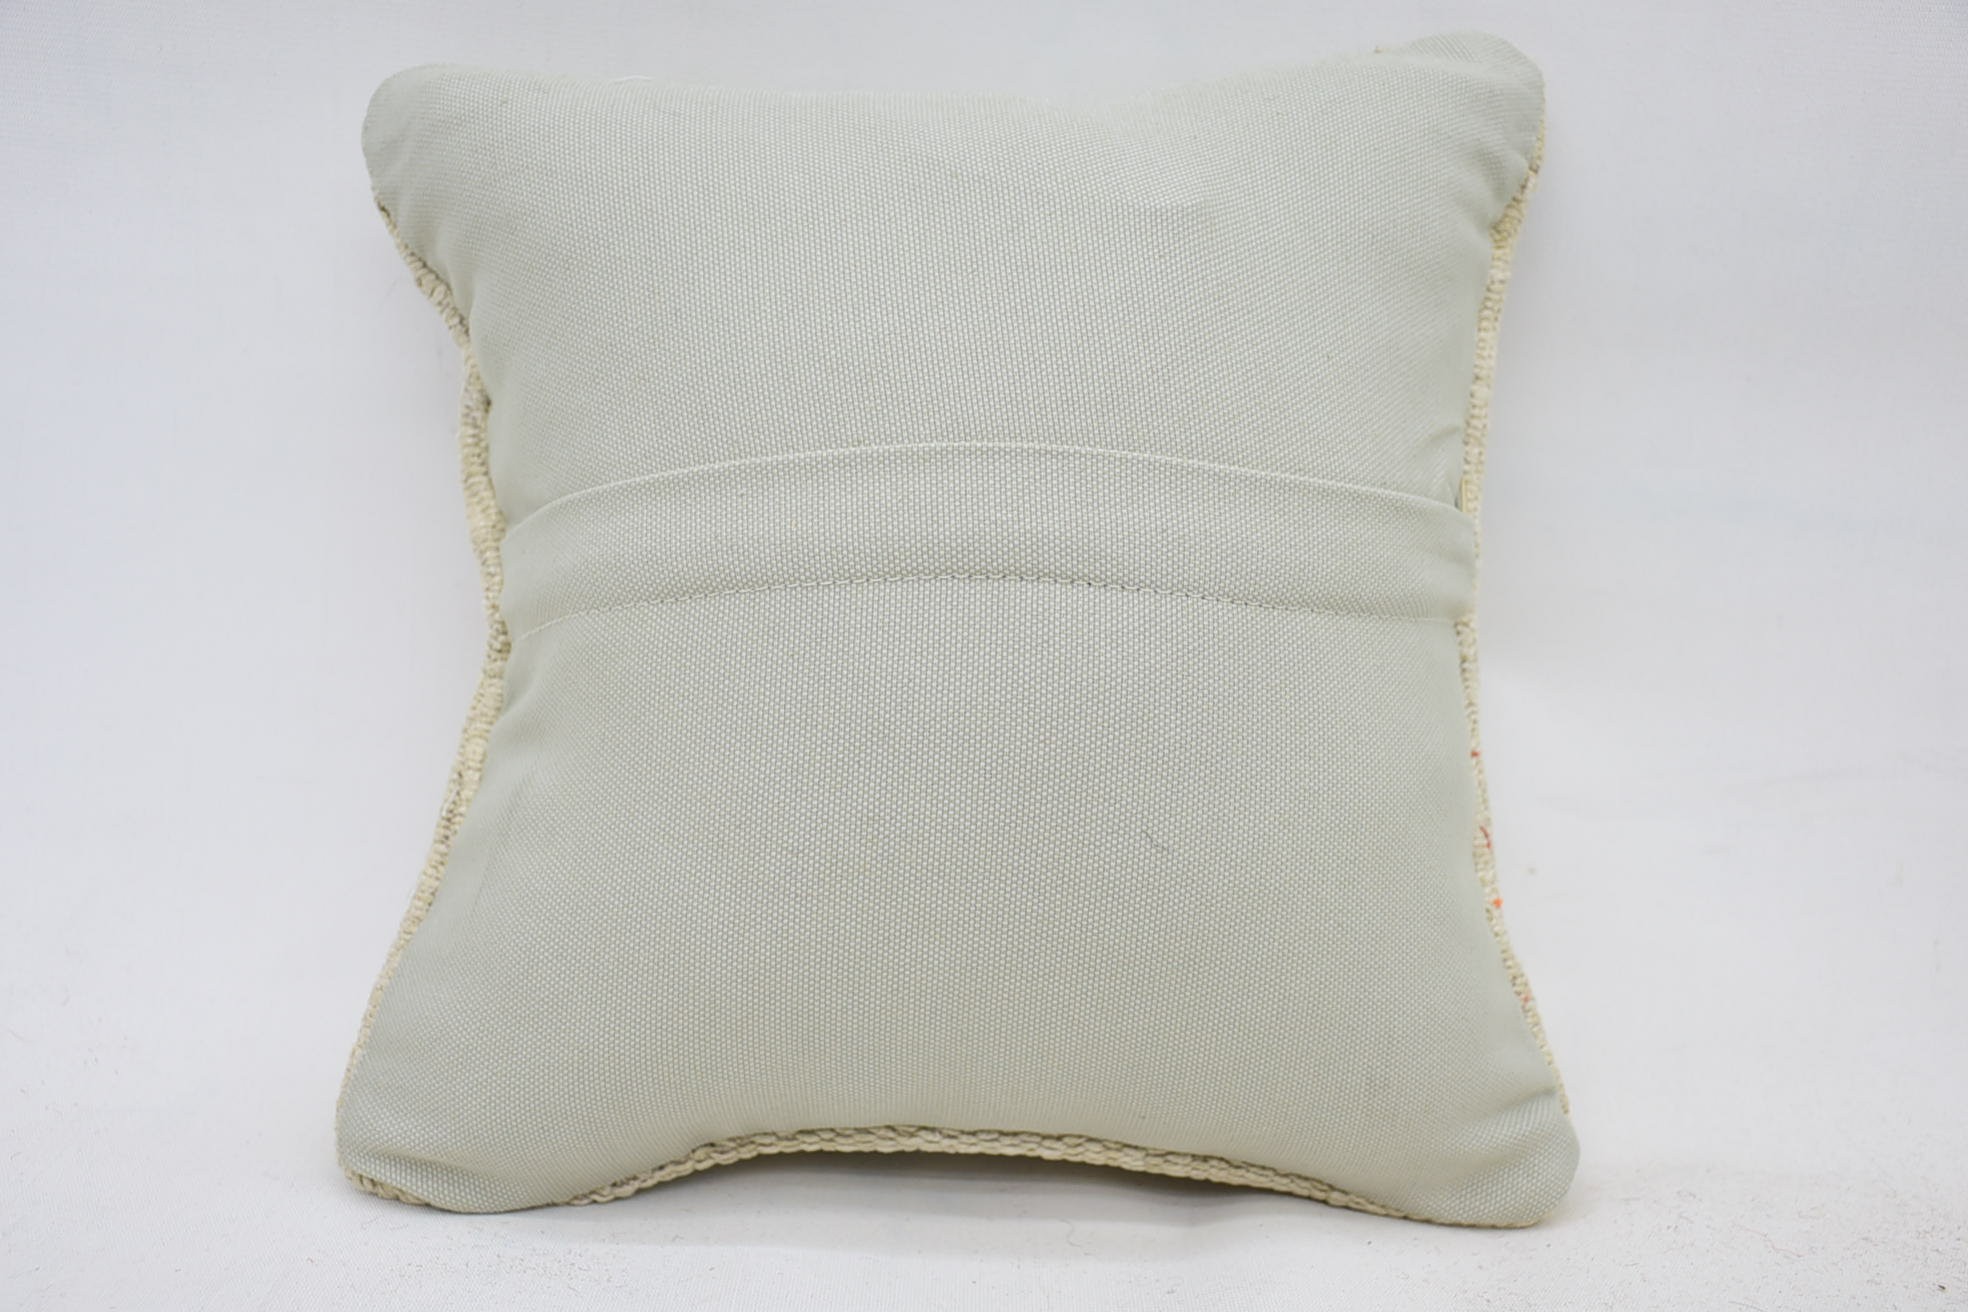 12"x12" Beige Pillow Cover, Kilim Cushion Sham, Neutral Cushion Cover, Retro Throw Pillow Case, Yoga Cushion, Pillow for Sofa, Boho Pillow